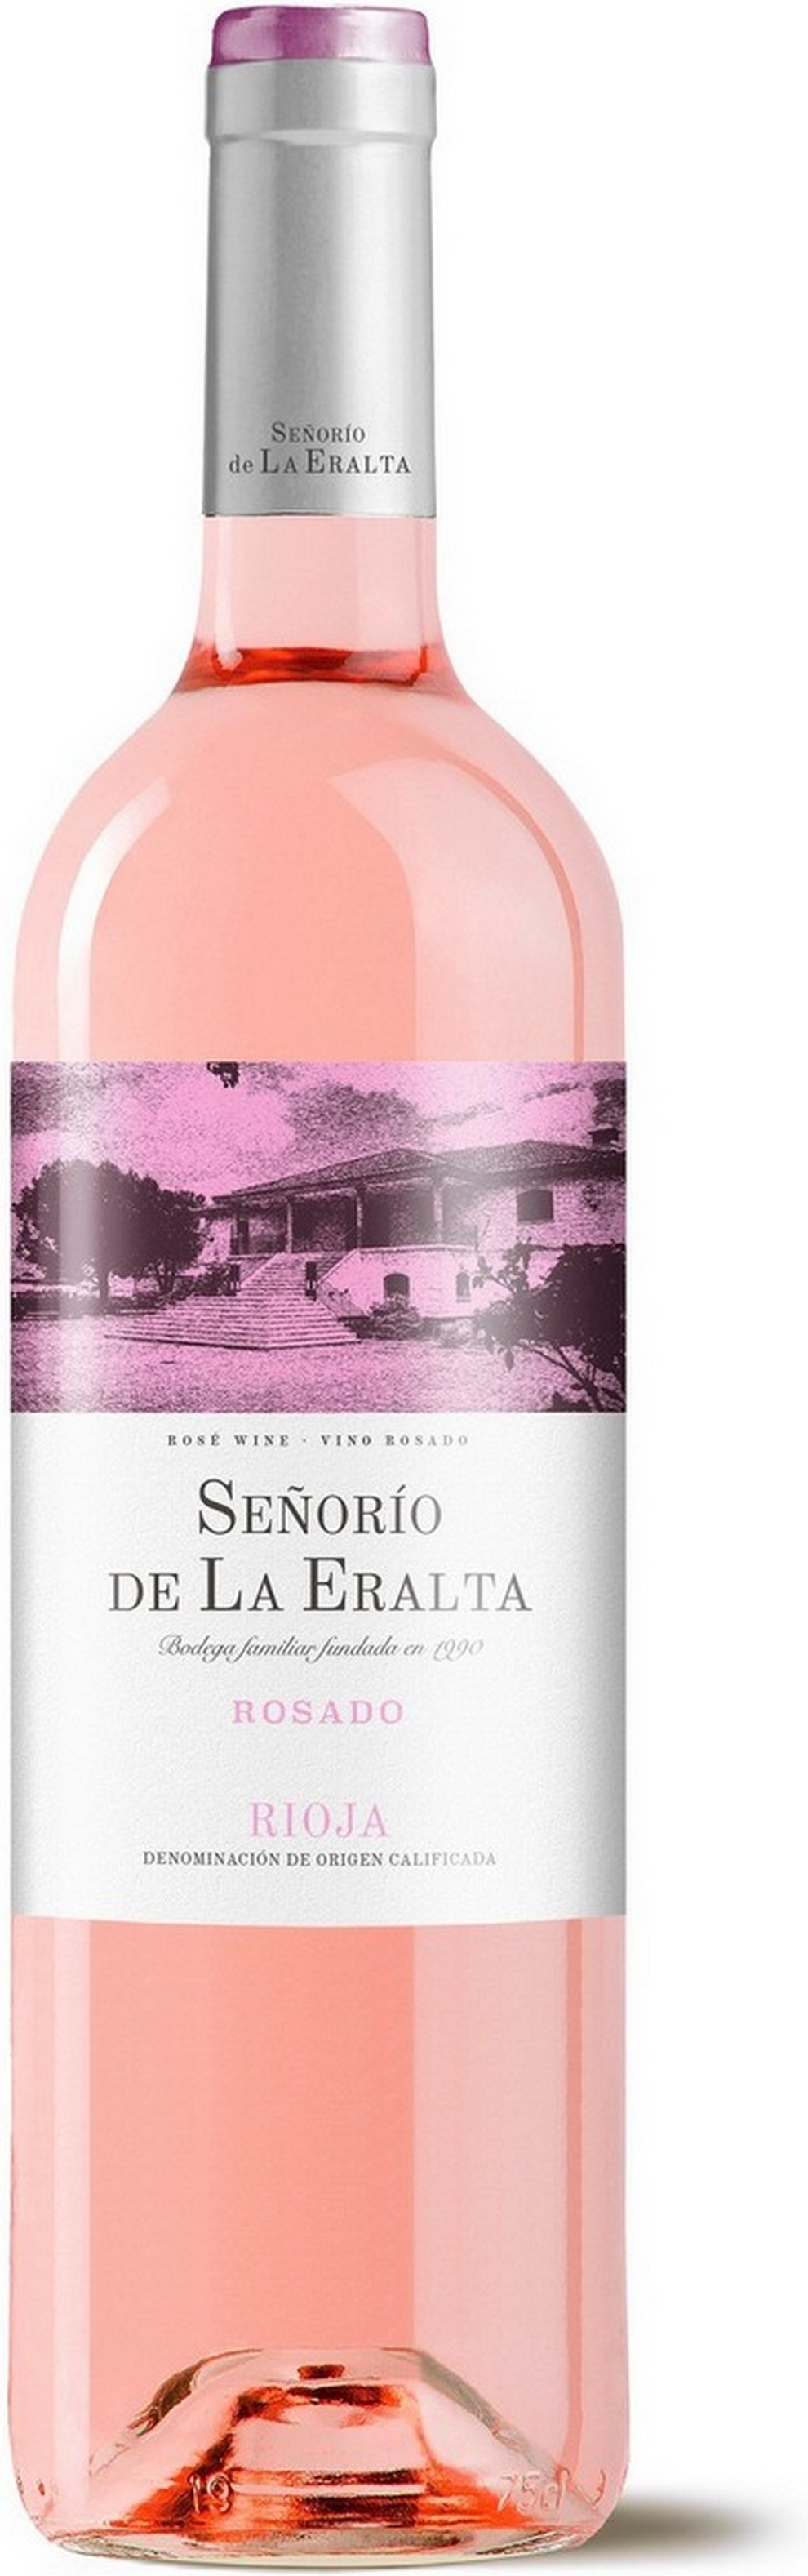 senorio-de-la-eralta-rosado-2019